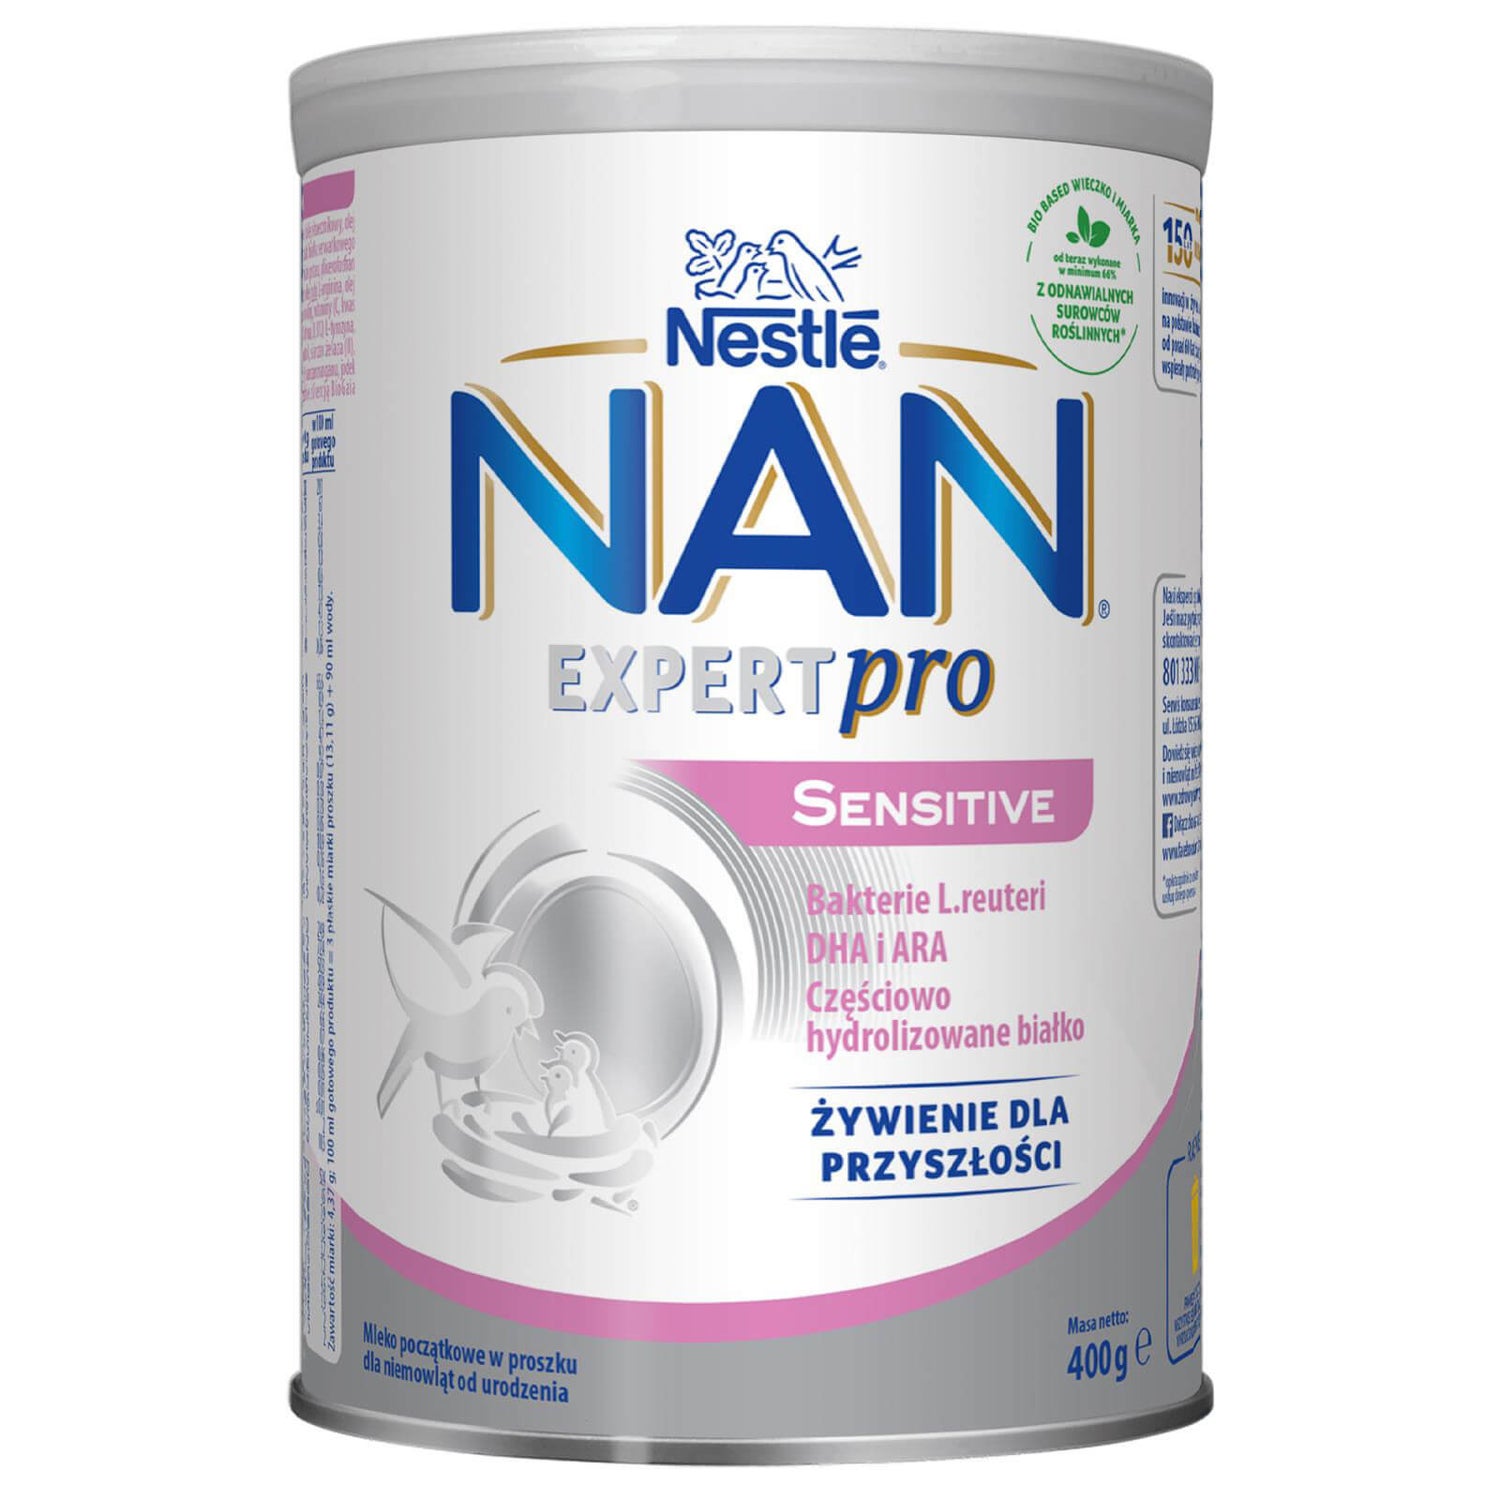 Nan Expertpro Sensitive - 400g